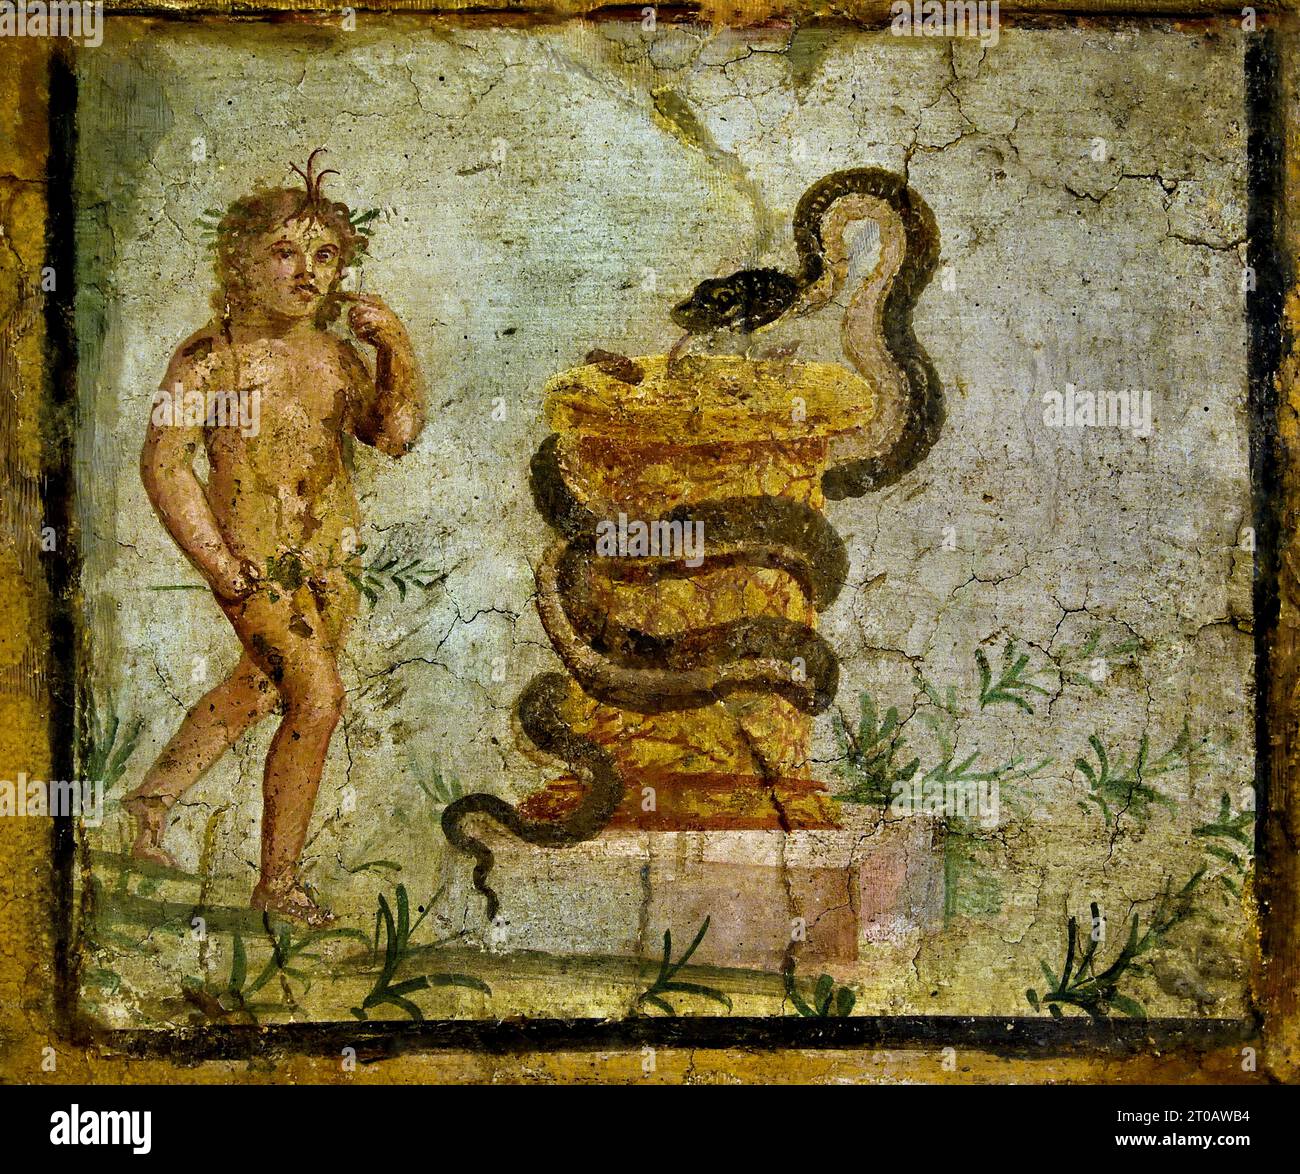 Harpocrate in piedi vicino a un altare, circondato da un serpente. Ercolano. La città romana di fresco Pompei si trova vicino a Napoli, nella regione Campania. Pompei fu sepolta sotto 4-6 m di cenere vulcanica e pomice nell'eruzione del Vesuvio nel 79 d.C. Italia Foto Stock